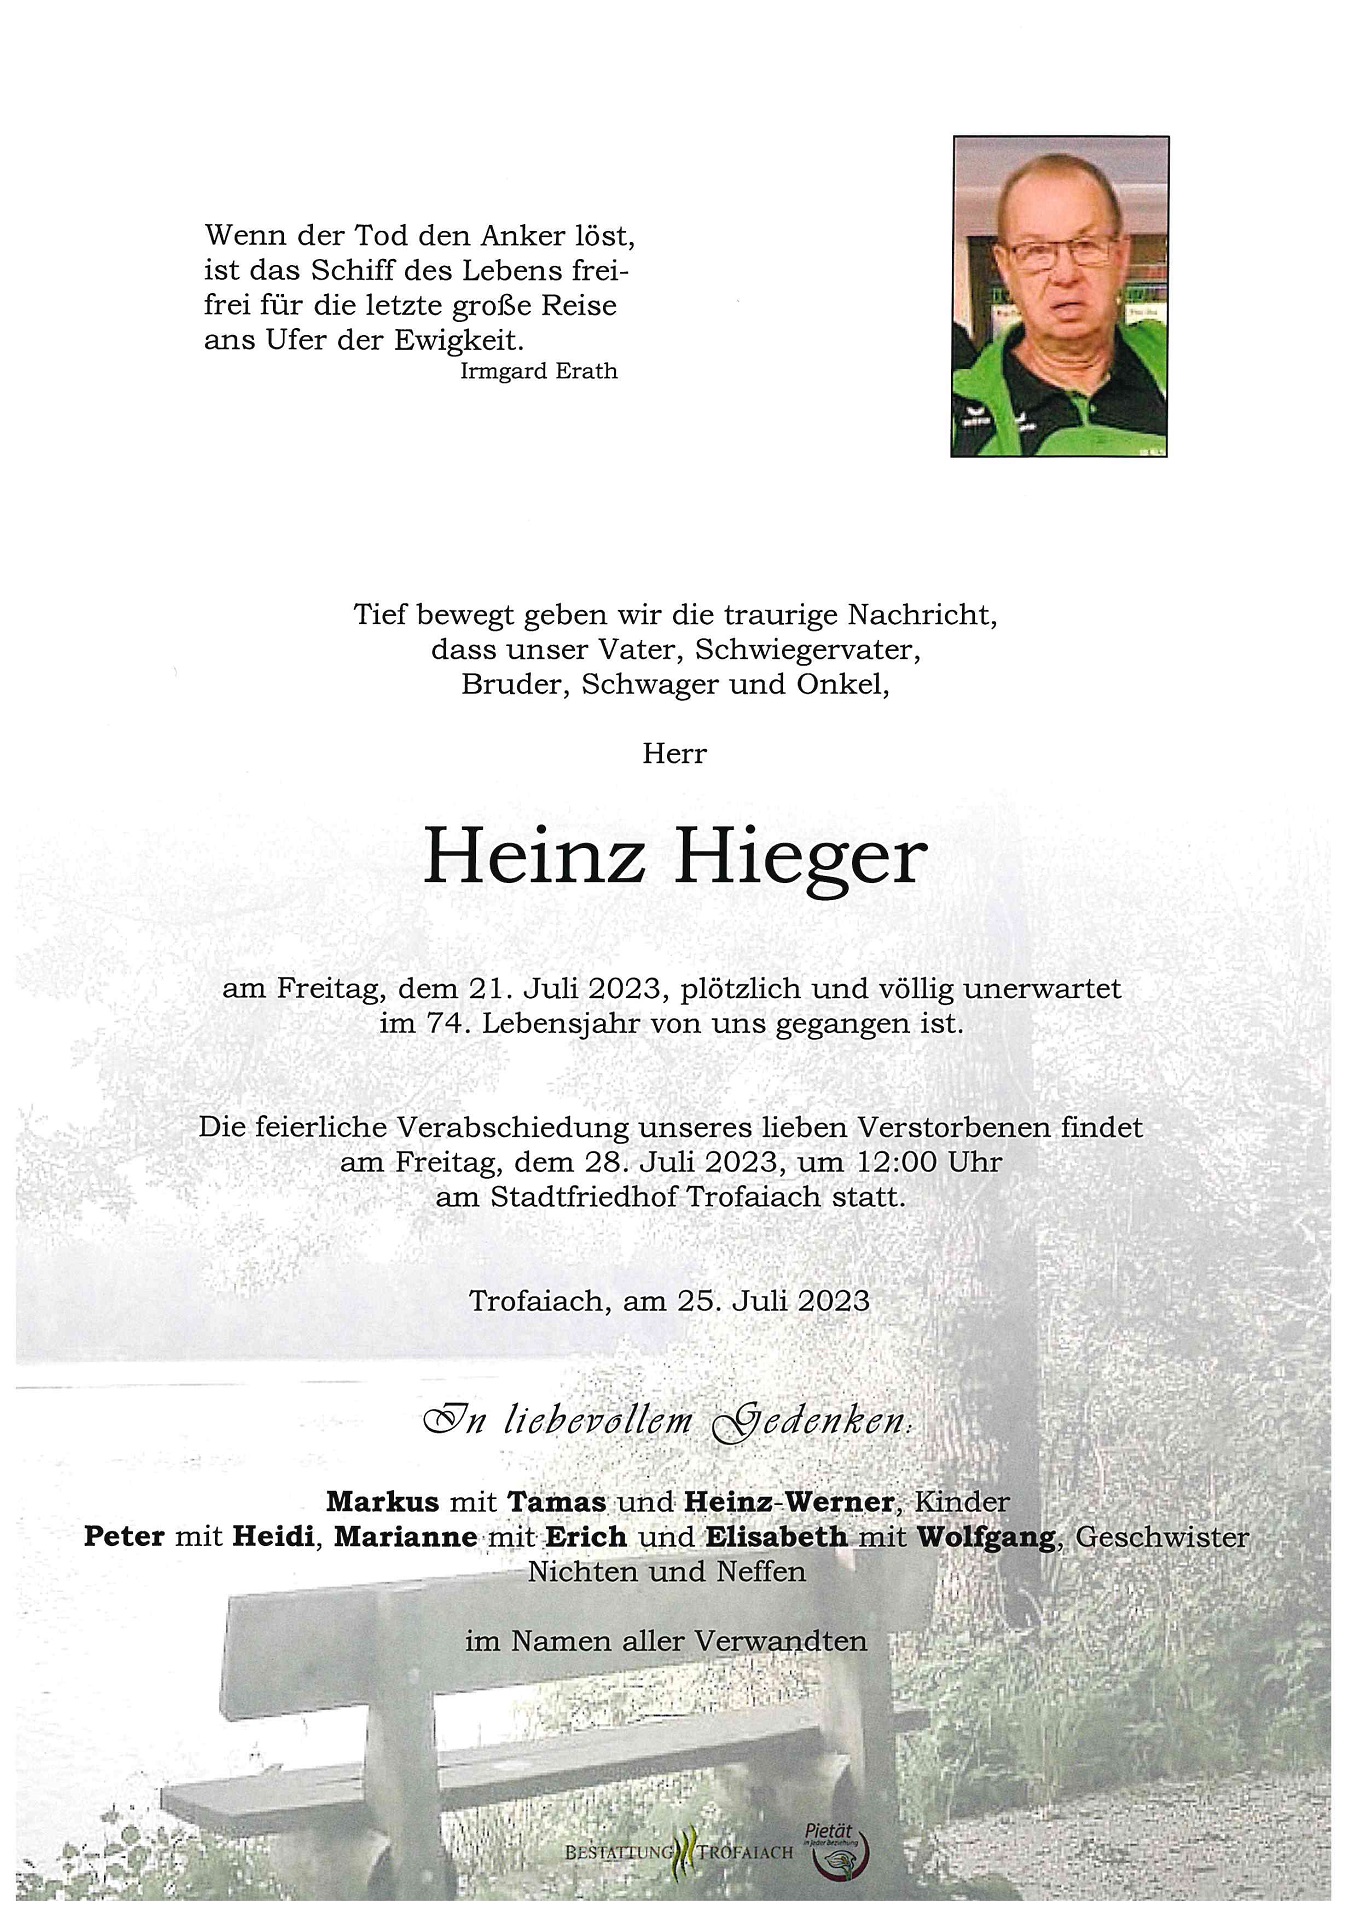 Hieger Heinz